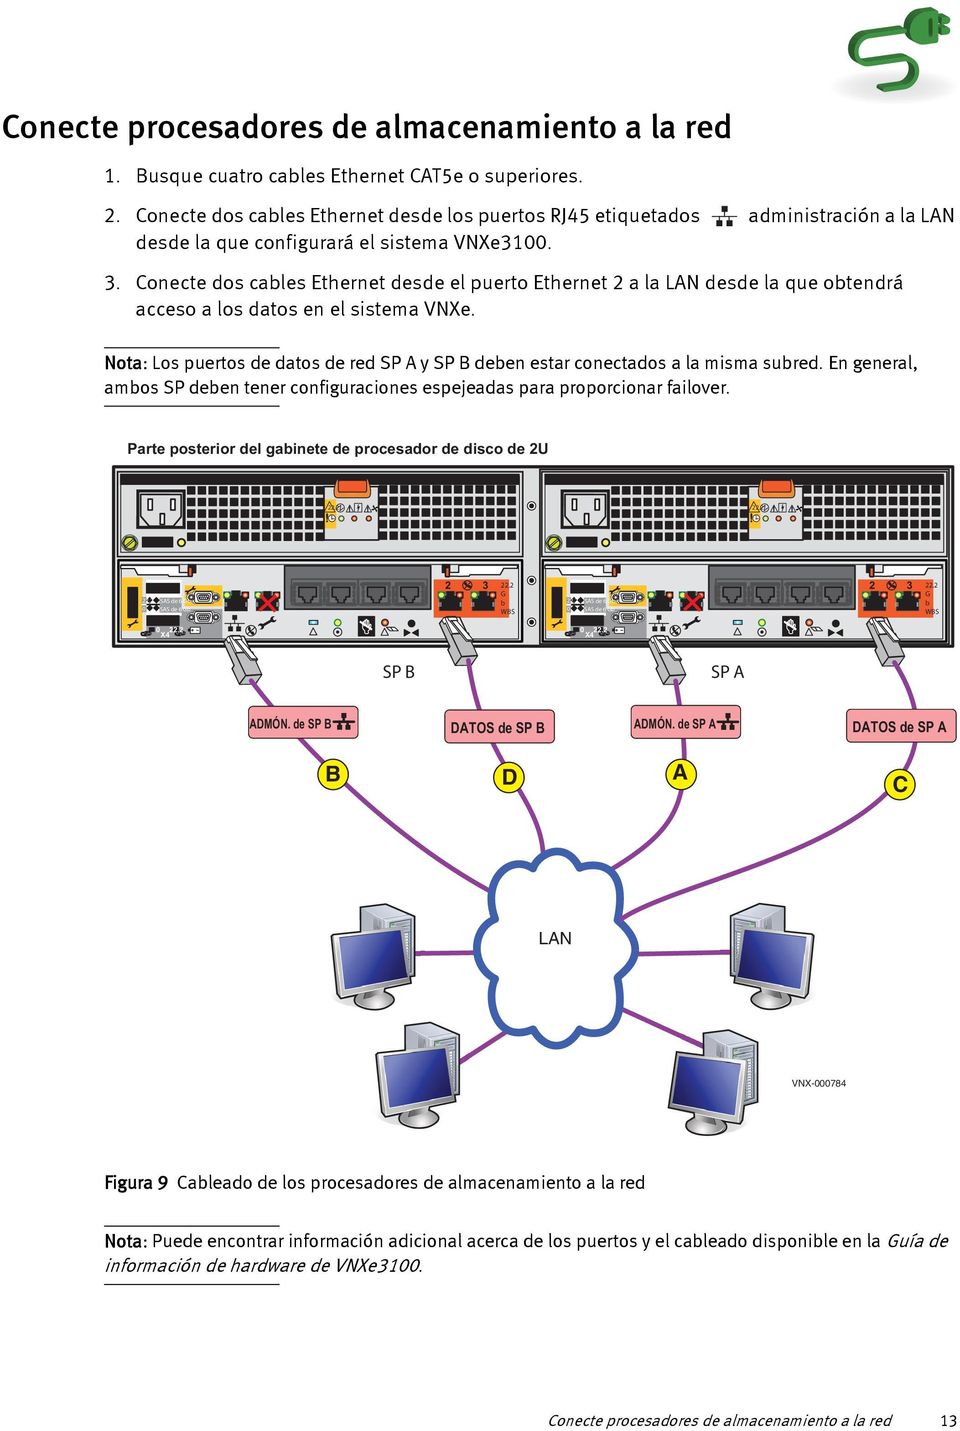 Conecte dos cables Ethernet desde el puerto Ethernet 2 a la LAN desde la que obtendrá acceso a los datos en el sistema VNXe.